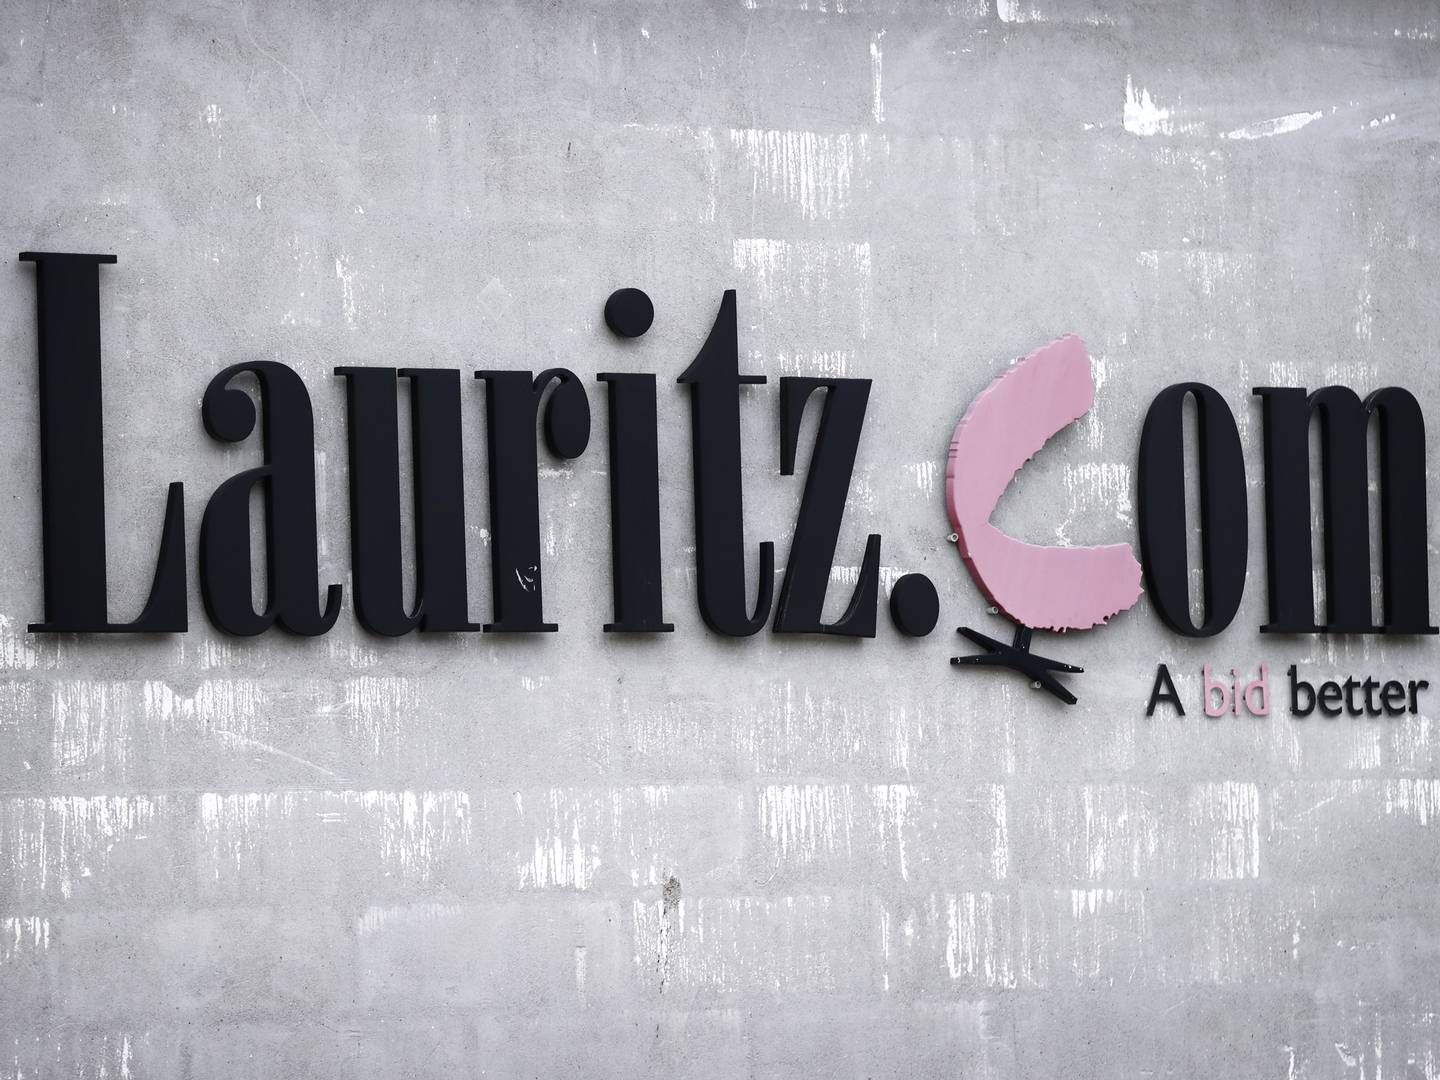 Lauritz.com blev begæret konkurs den 11. juli efter en mislykket rekonstruktion. | Foto: Jens Dresling